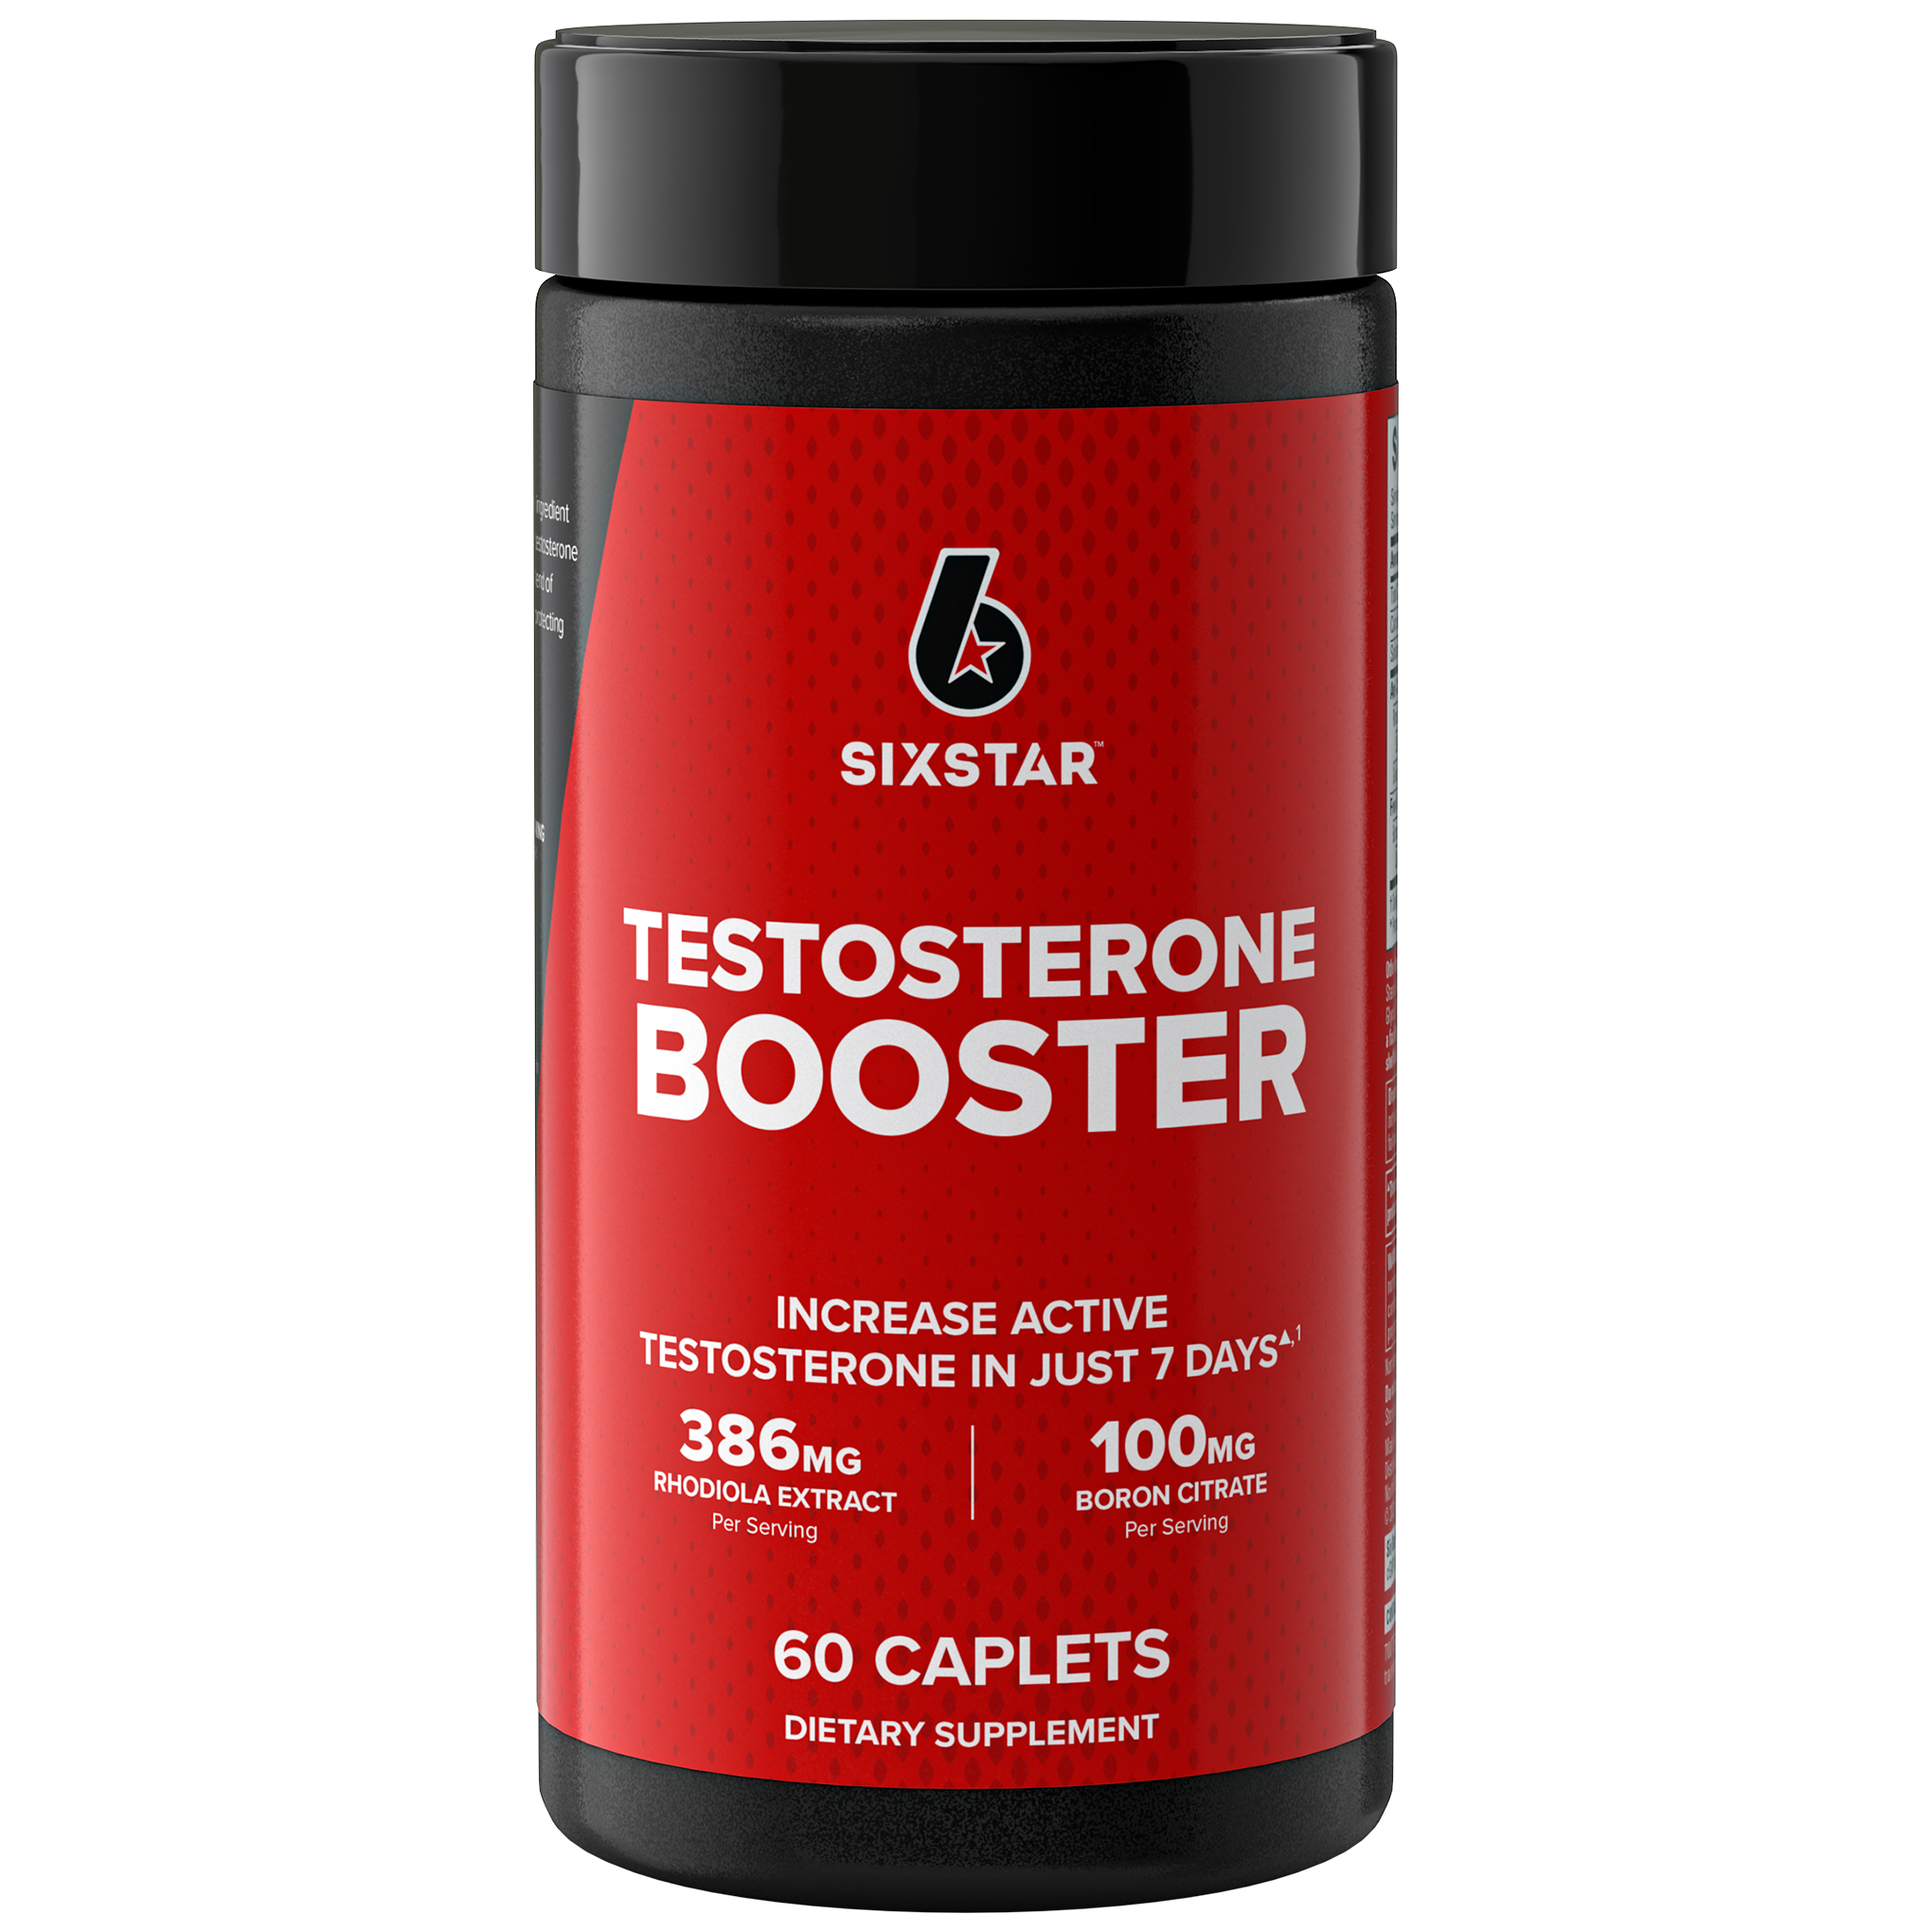 Six Star Testosterone Booster - Suplemento dietario para potenciar la testosterona